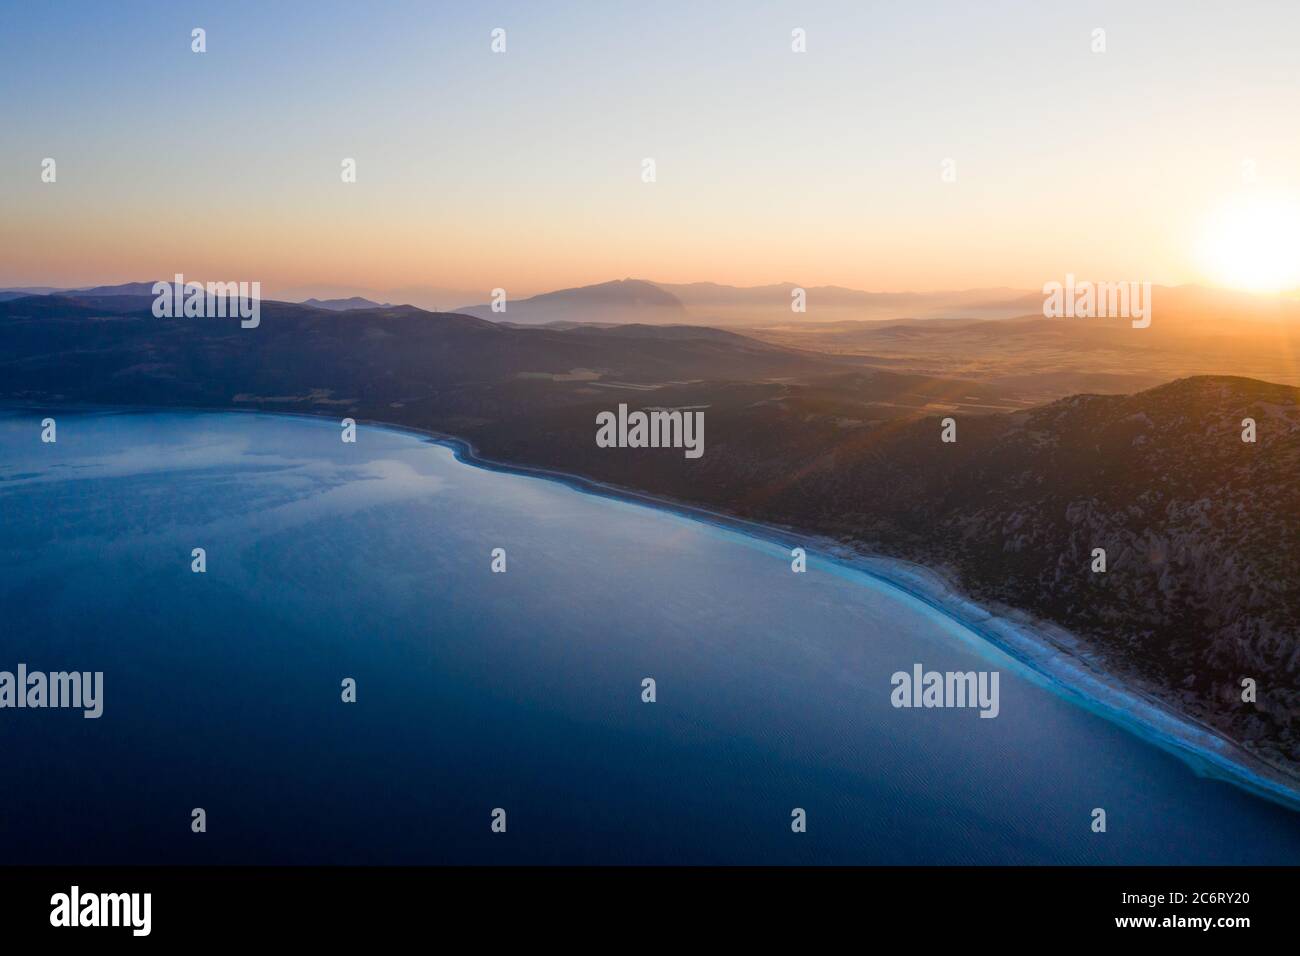 Una vista aerea di un lago con alba e silhouette collina sfondo. Concetto di turismo di viaggio. Foto di alta qualità Foto Stock